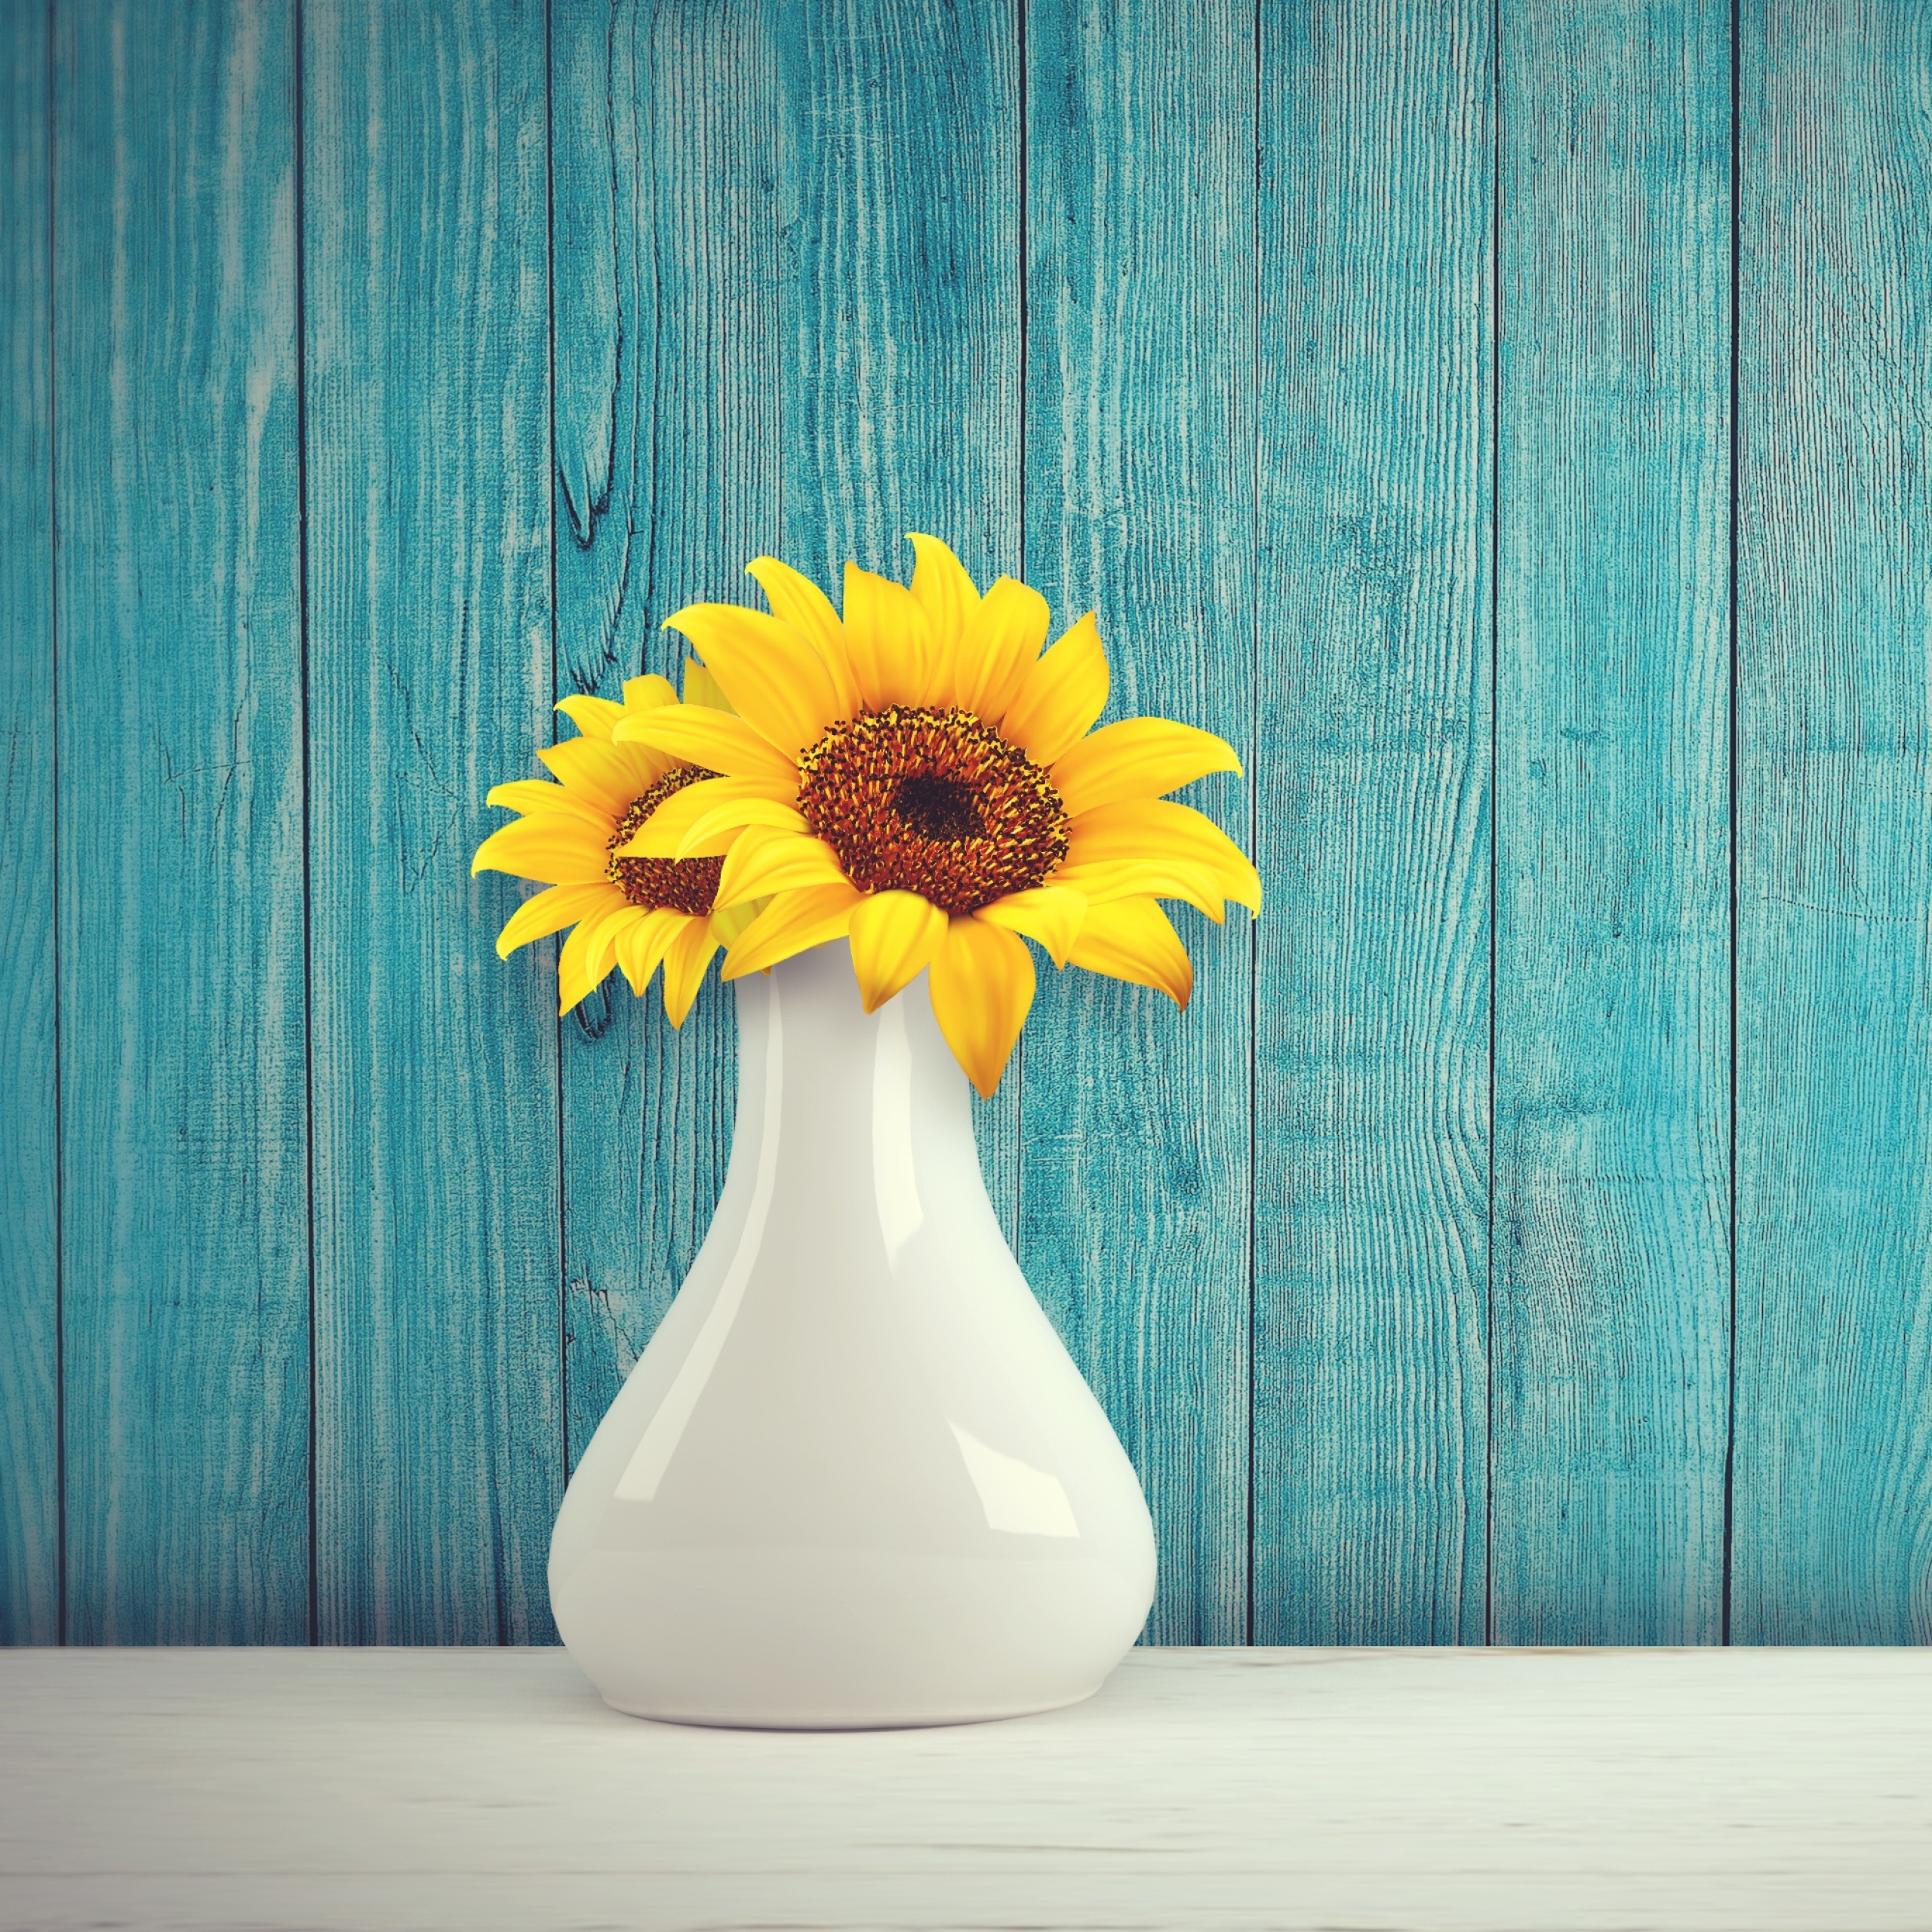 Sunflowers Wallpaper 4K, Flower vase, Wooden background, Teal, Flowers